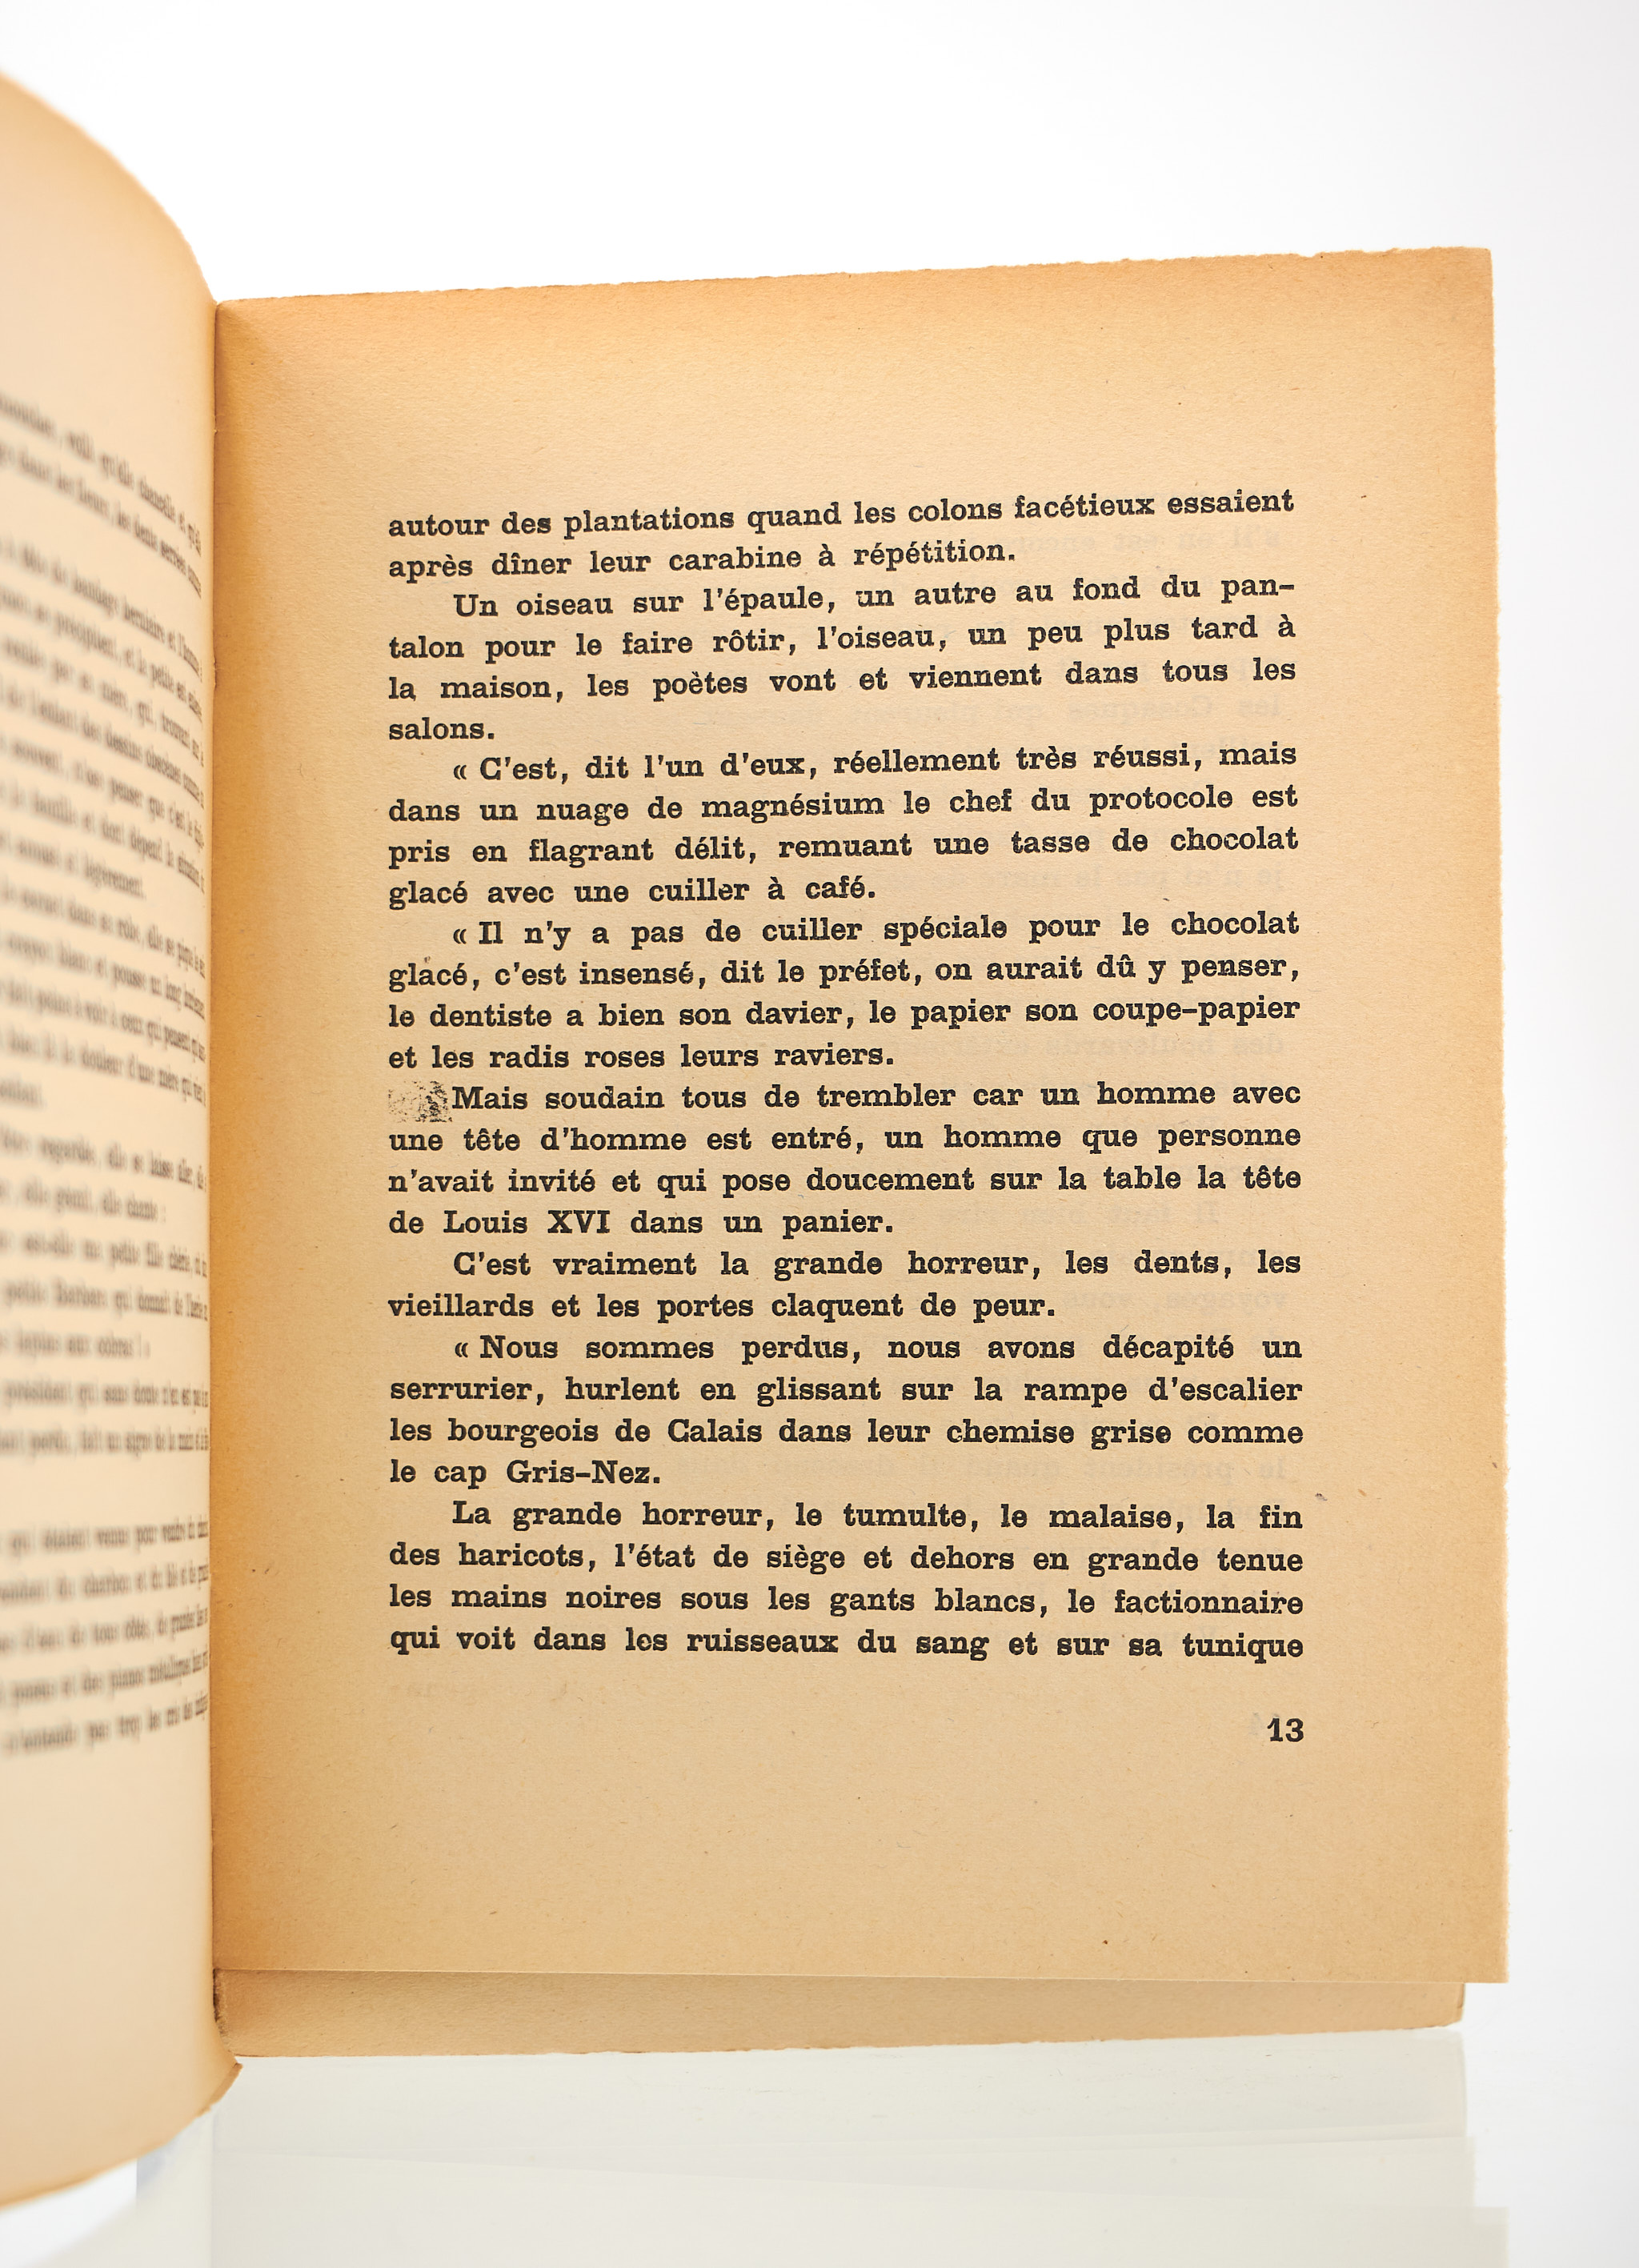 Paroles by PREVERT Jacques: couverture souple (1949) Signed by Author(s ...